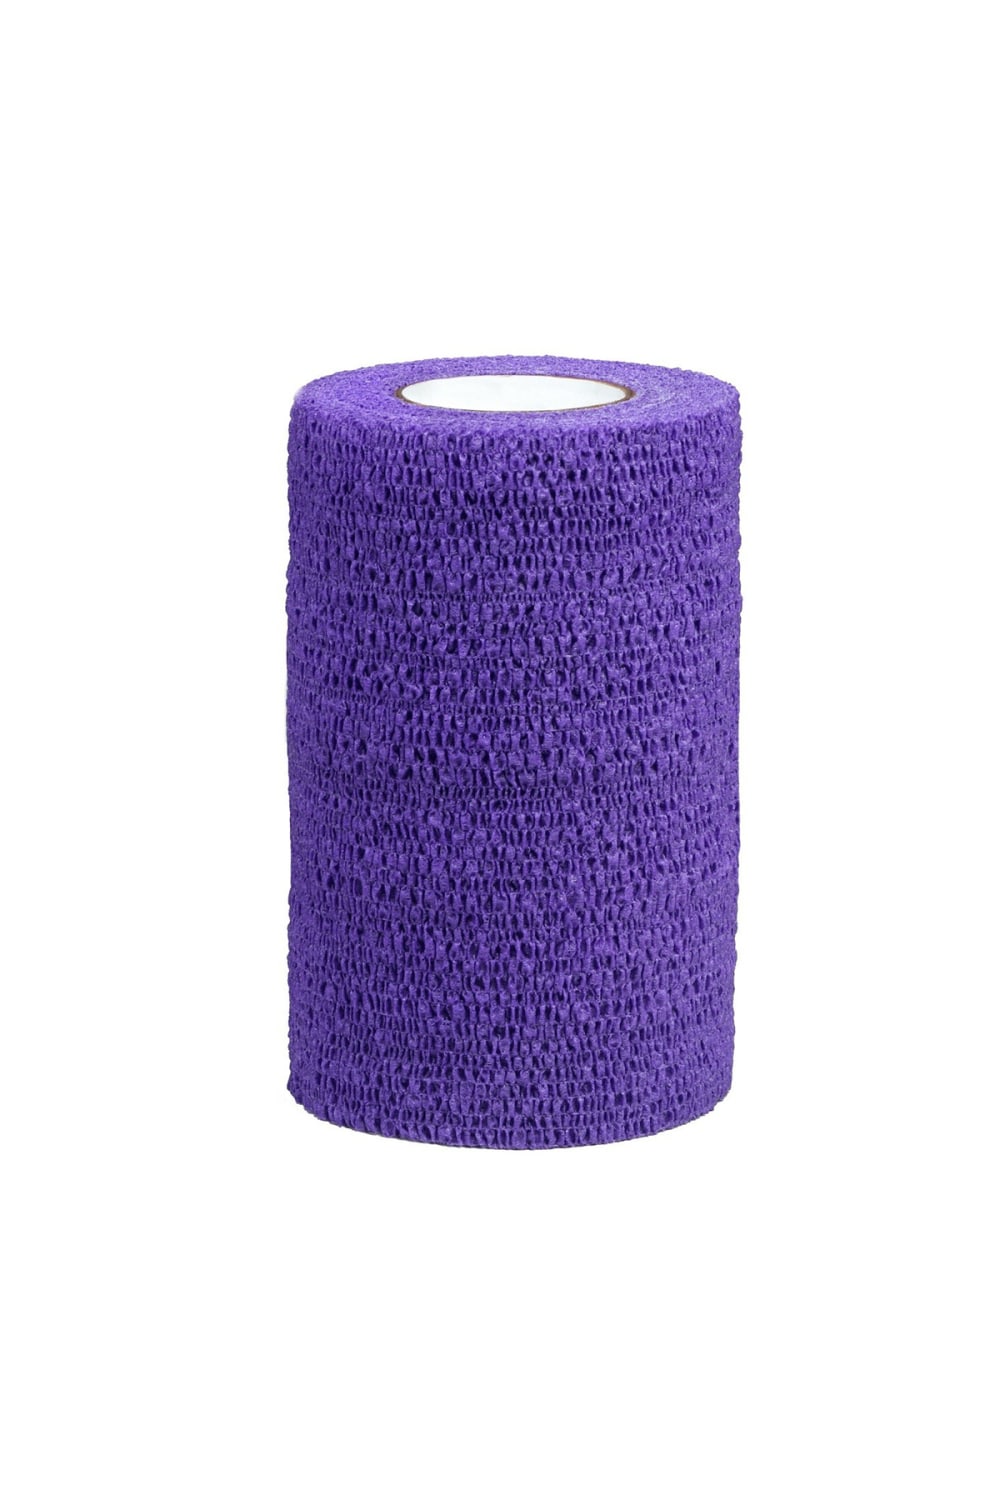 Vetrap 4 inch Bandage (Purple) (4 inches)